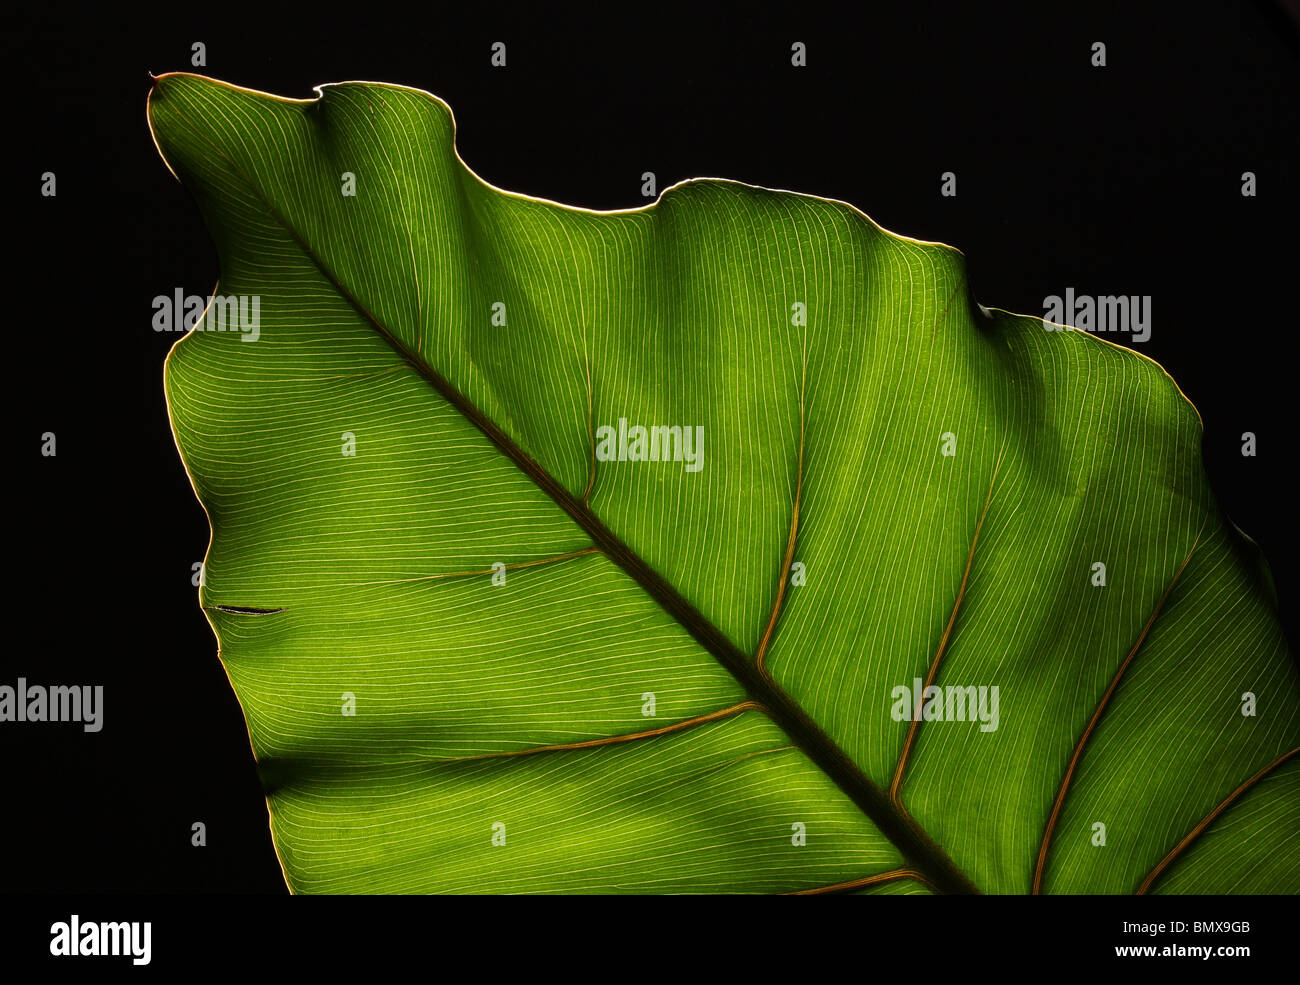 Des feuilles des plantes vertes avec une structure forte sur un fond noir Banque D'Images